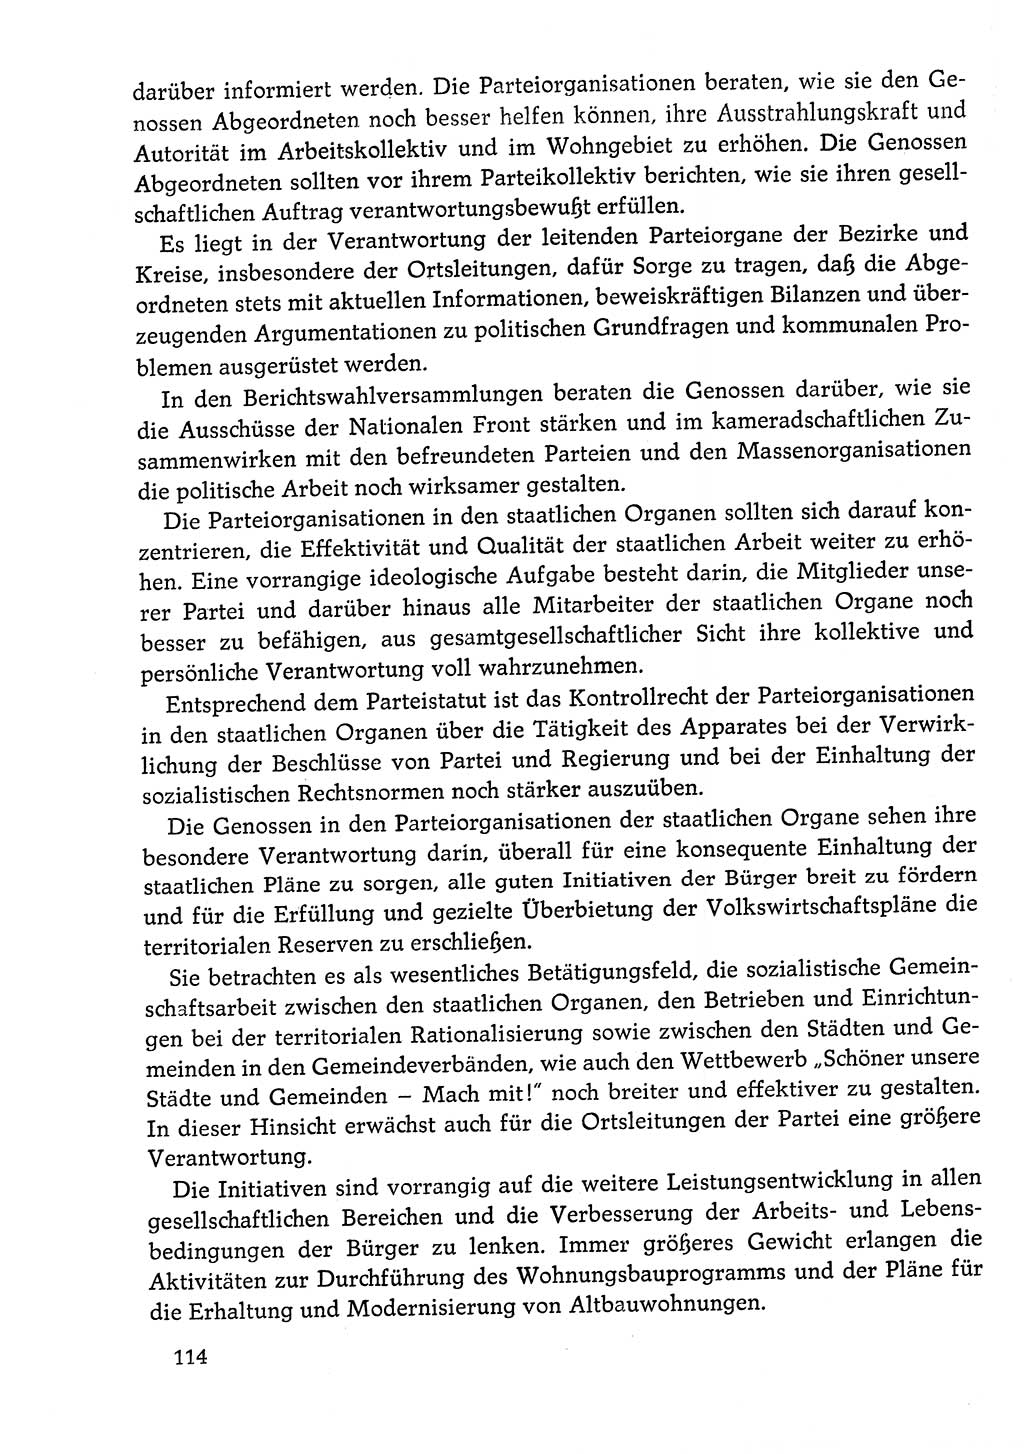 Dokumente der Sozialistischen Einheitspartei Deutschlands (SED) [Deutsche Demokratische Republik (DDR)] 1978-1979, Seite 114 (Dok. SED DDR 1978-1979, S. 114)